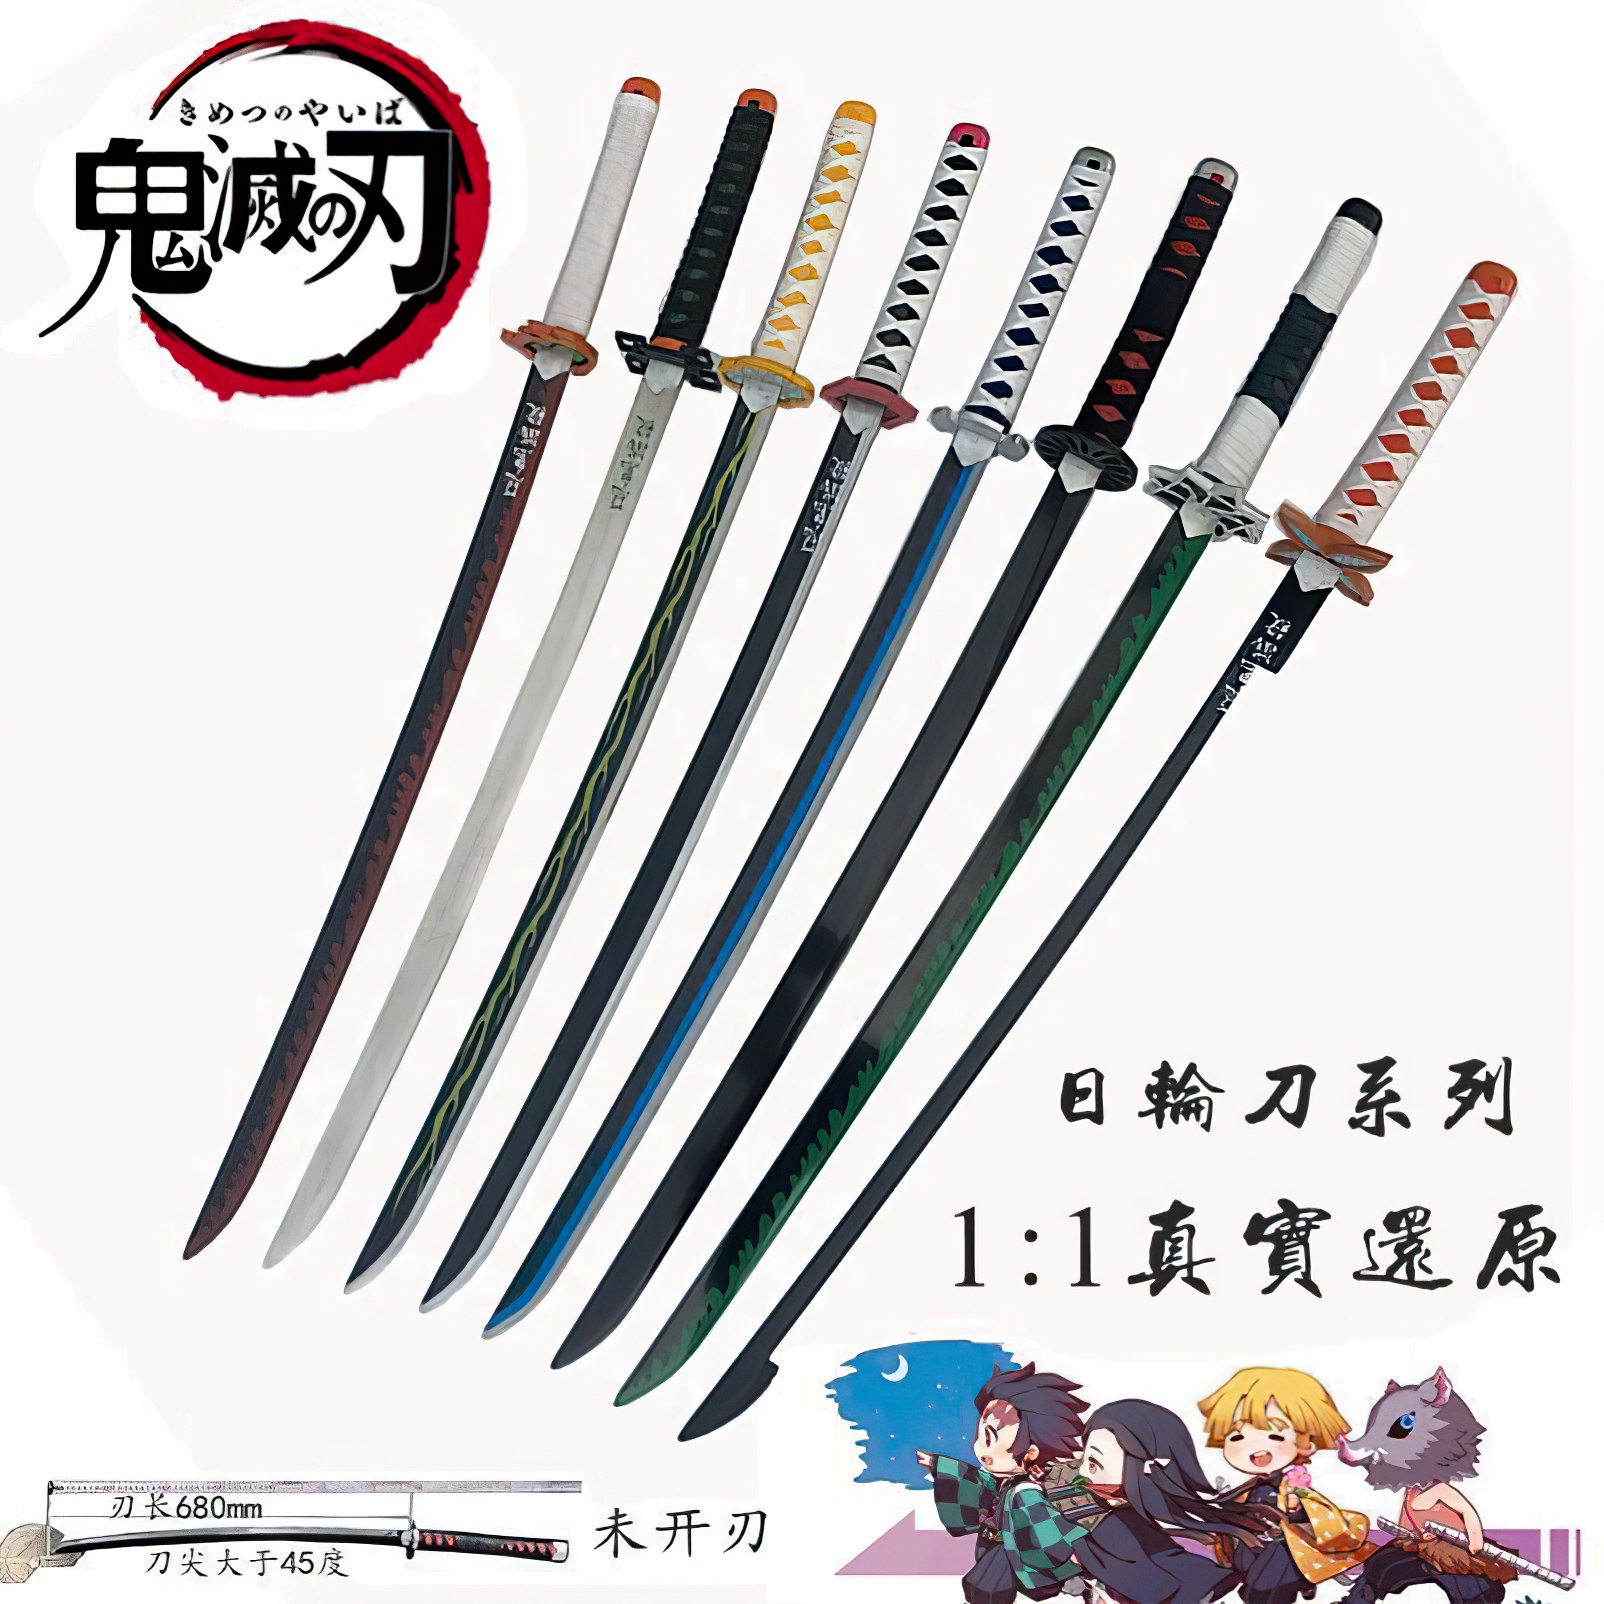 Kimetsu no Yaiba nichirin swords